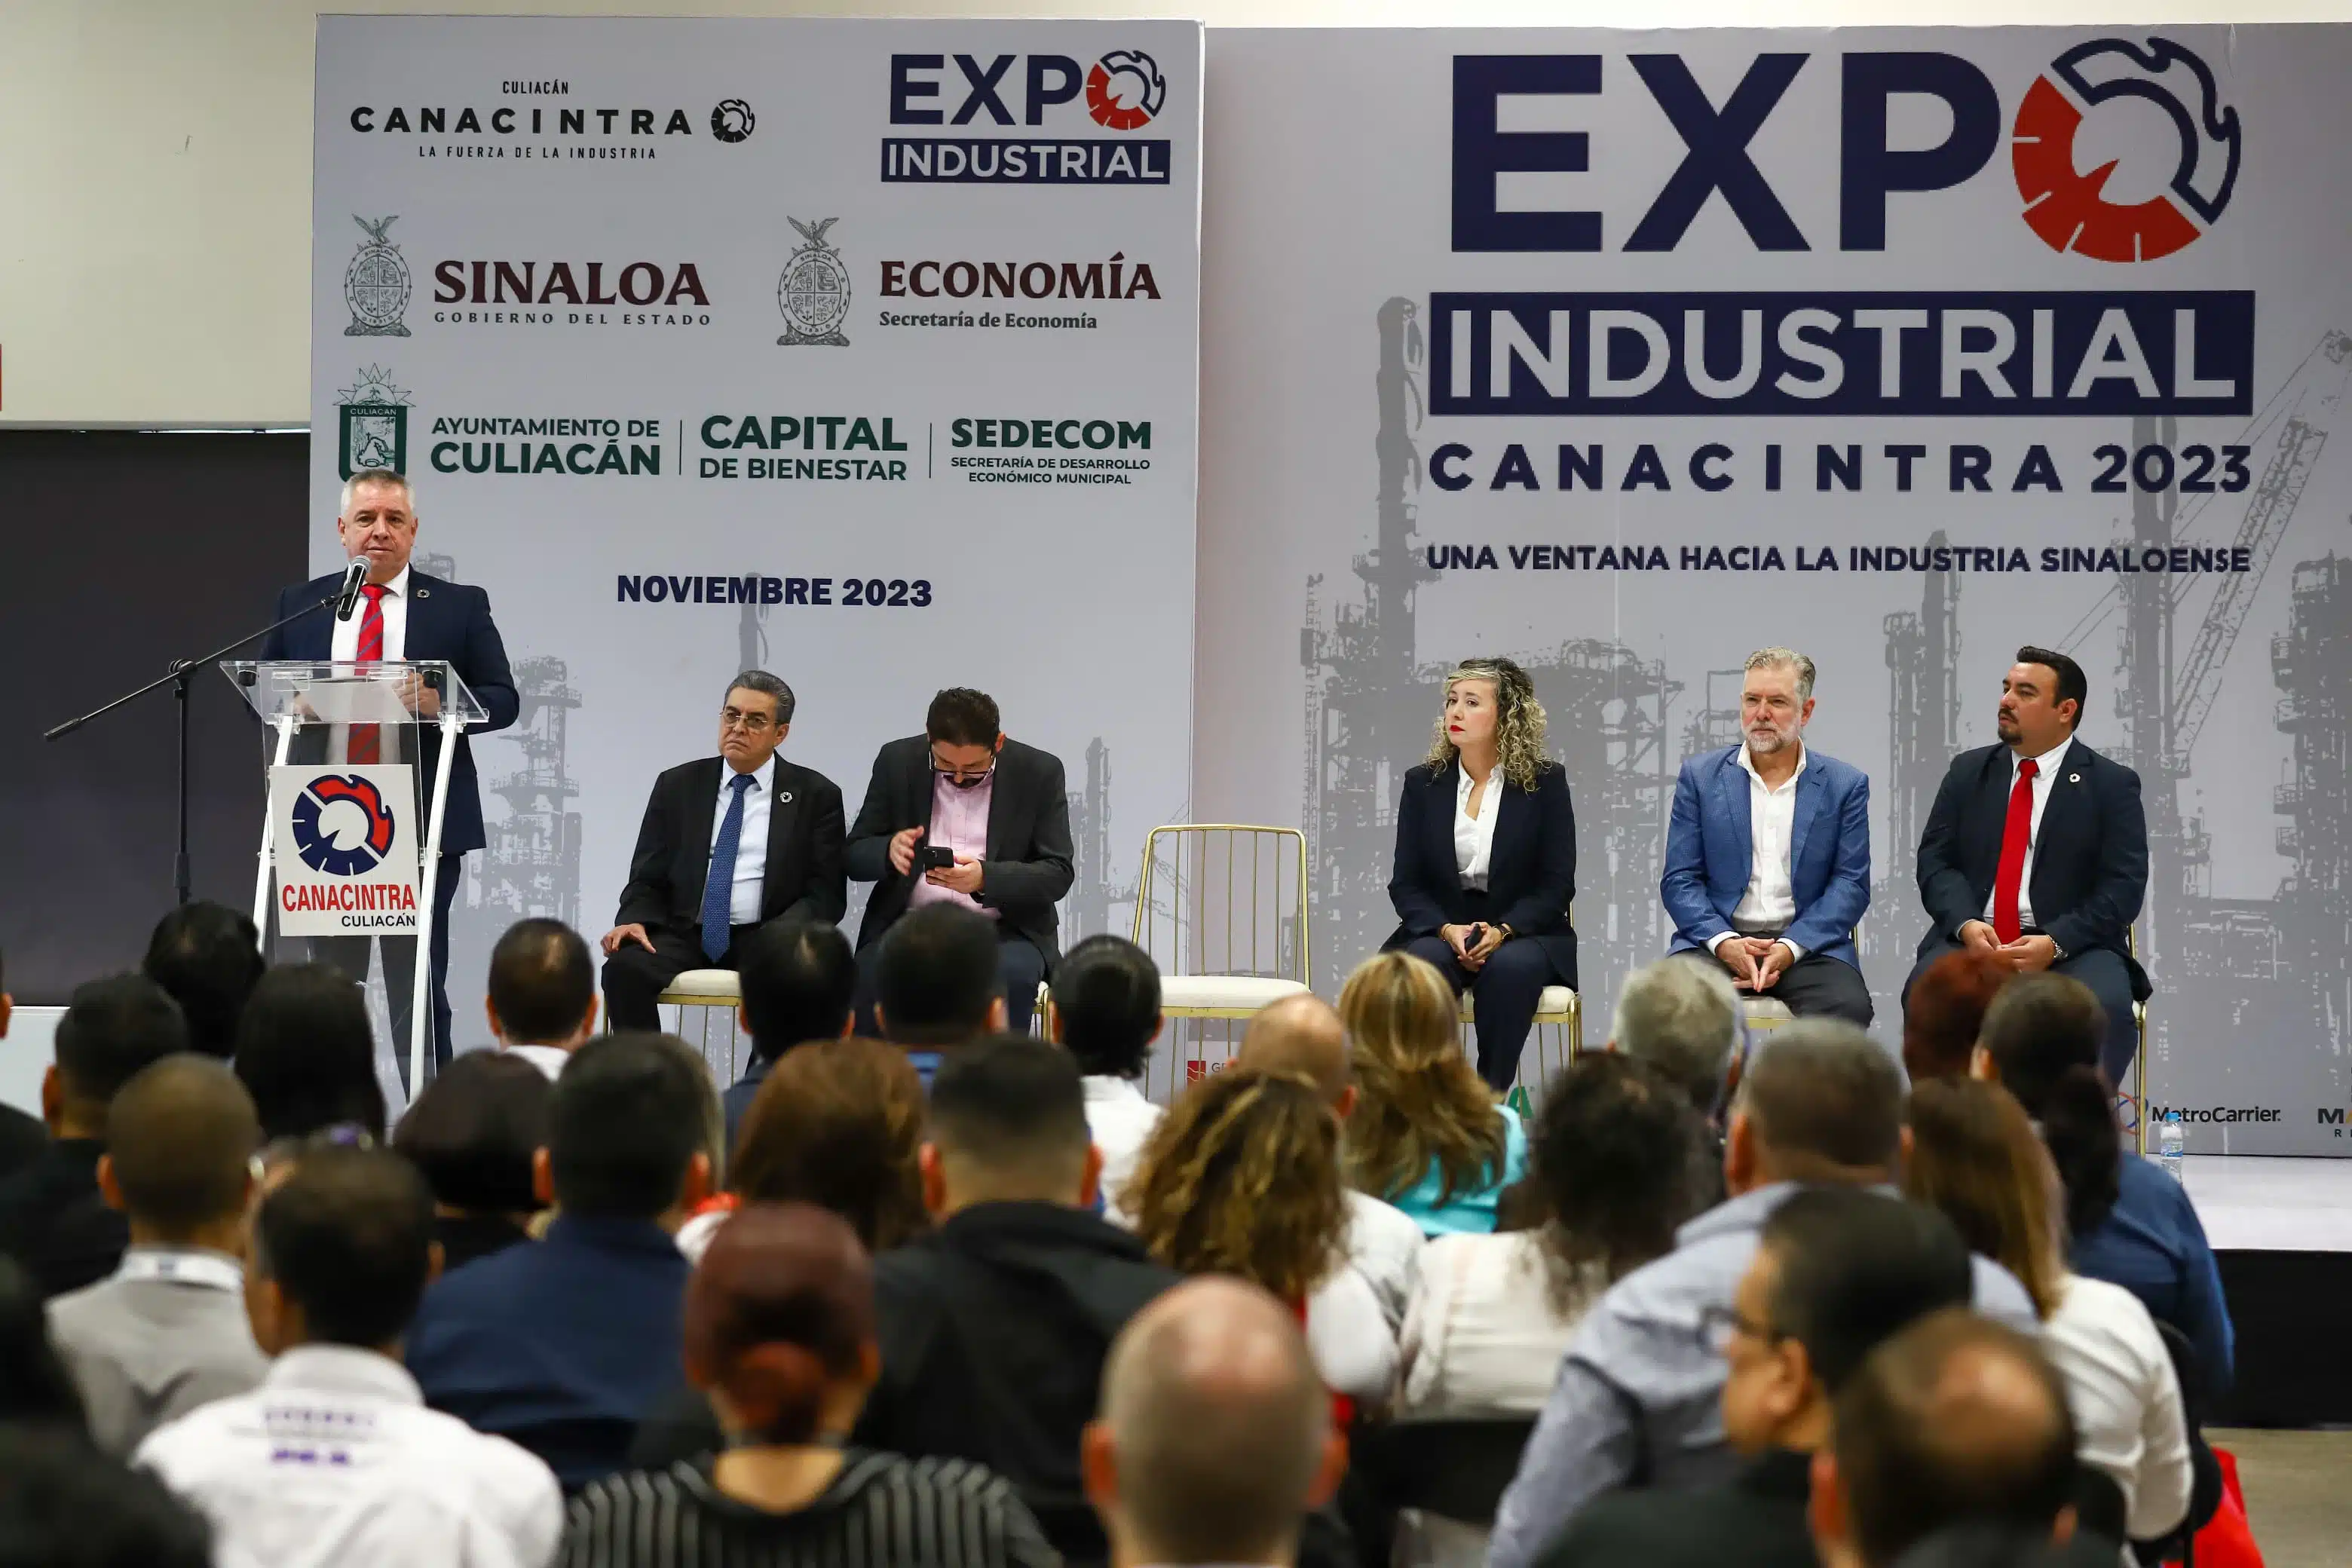 Expo Industria Canacintra 2023